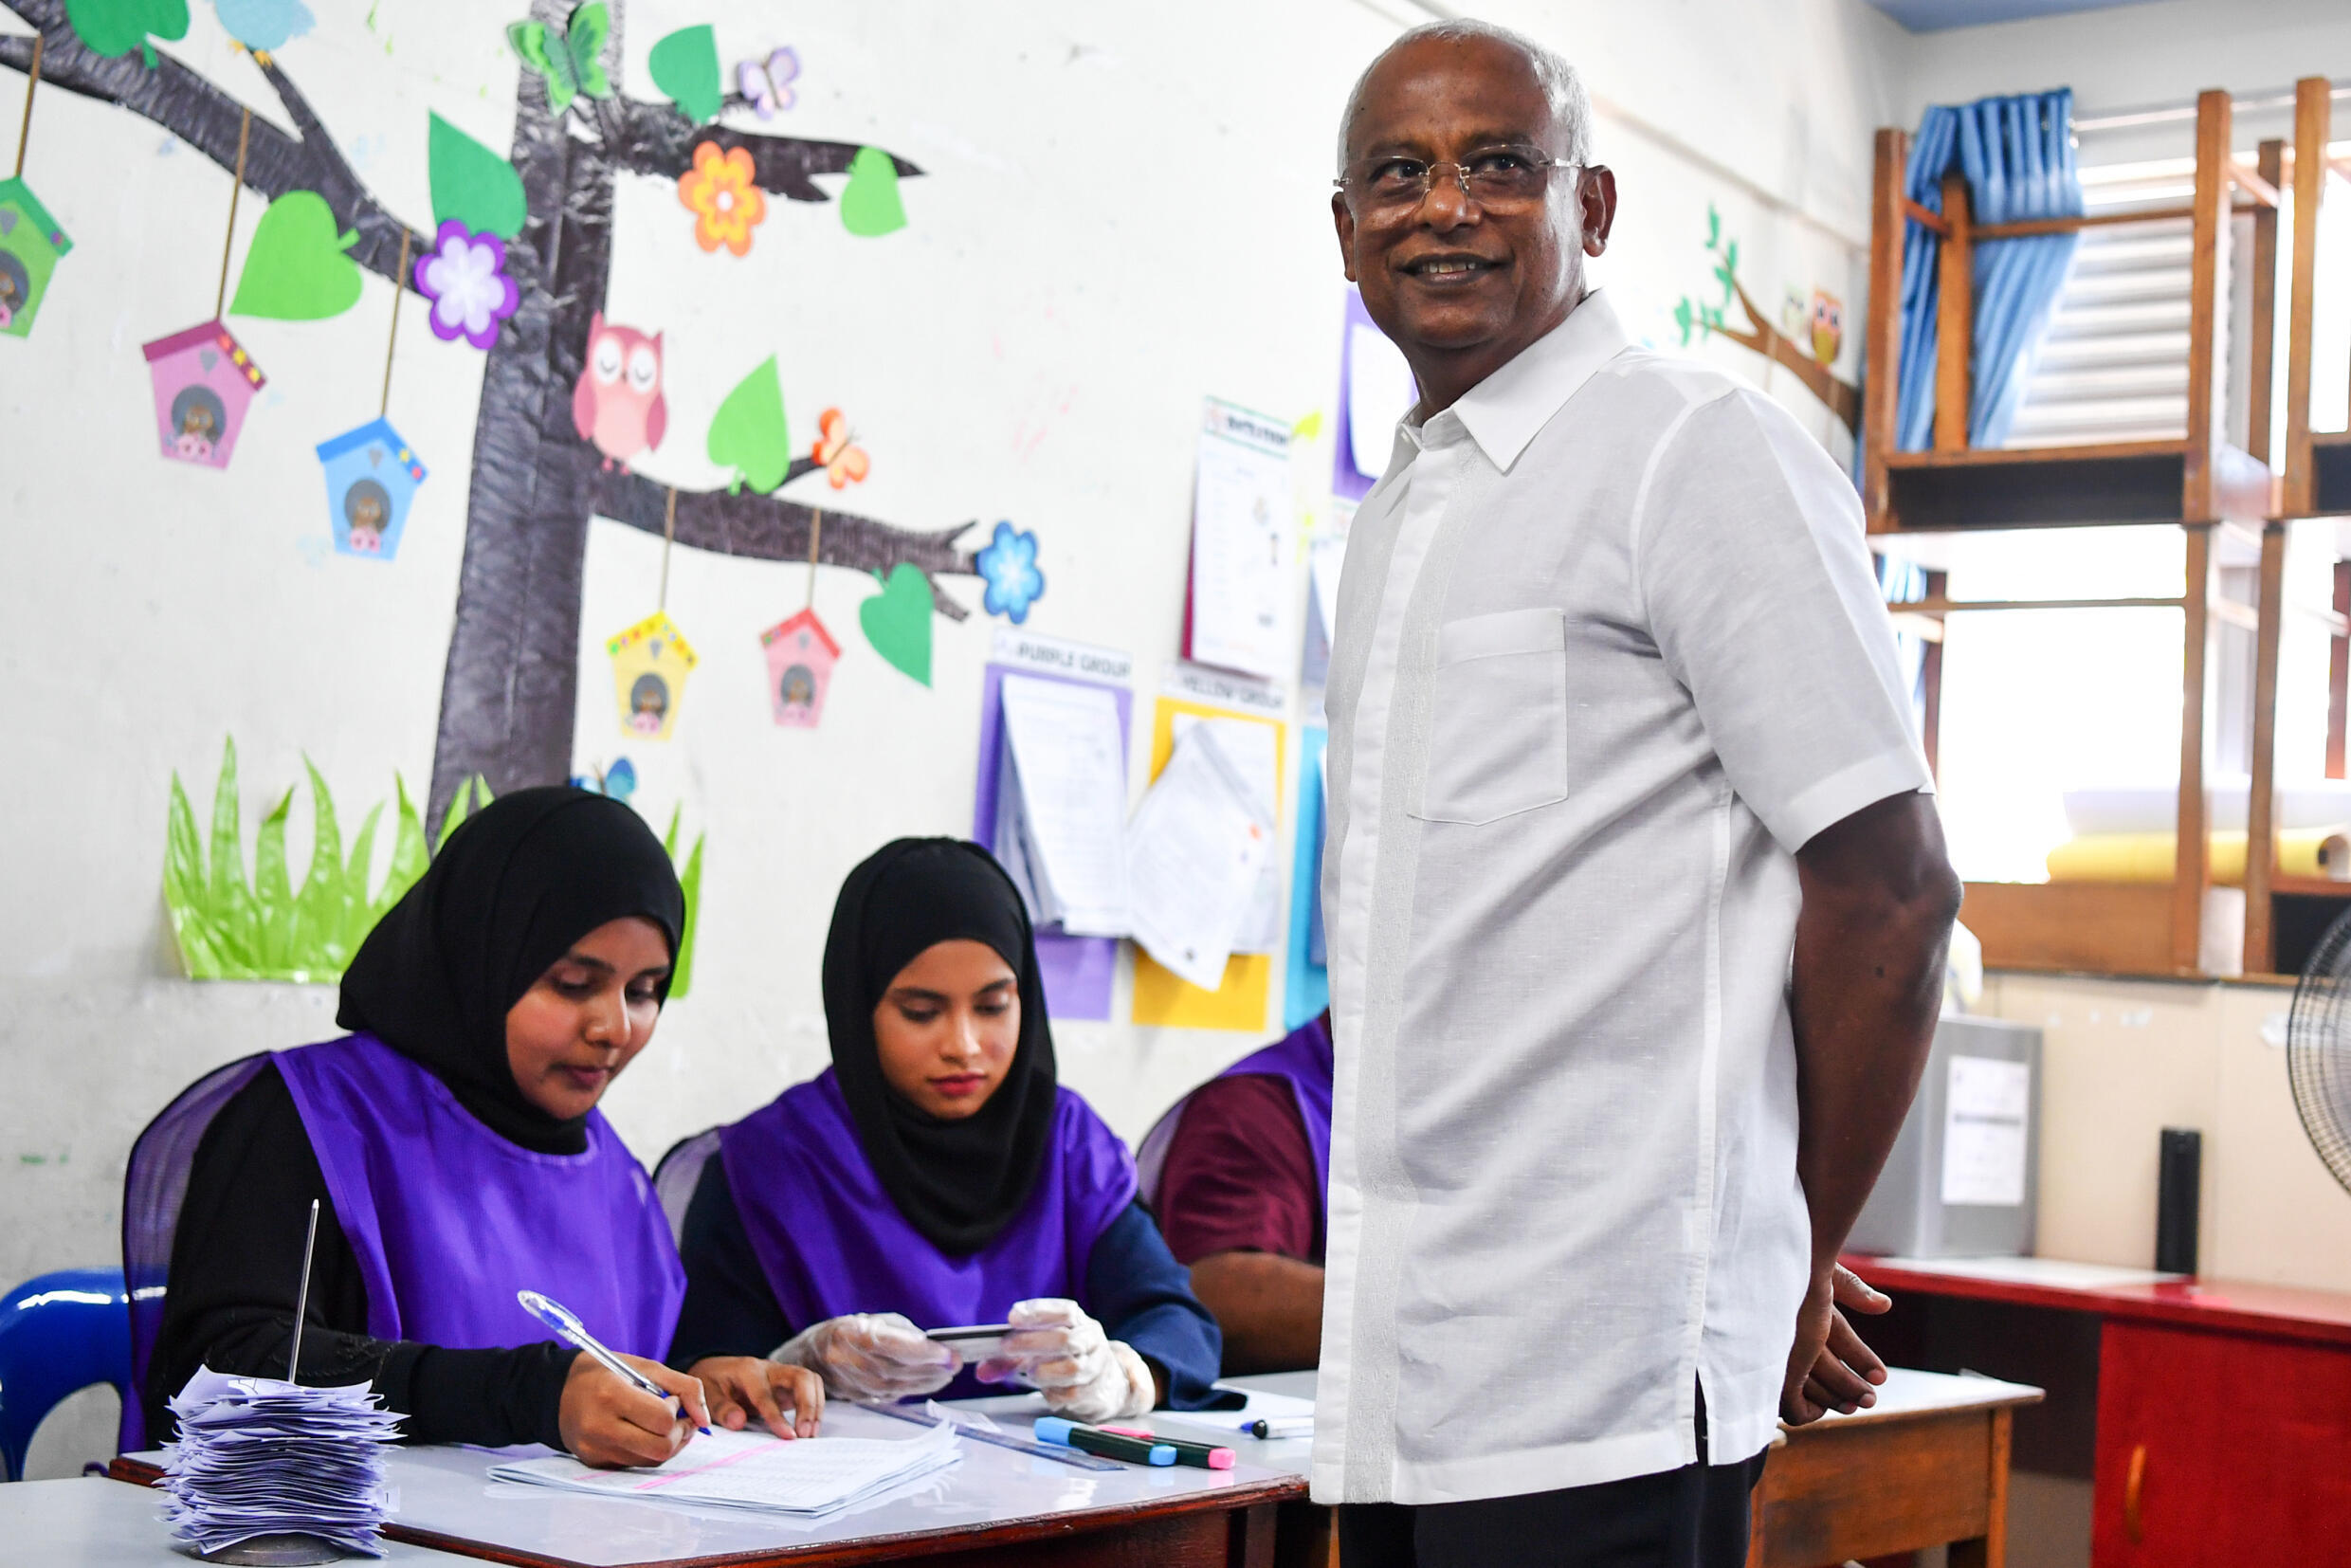 Der Führer der Malediven, Ibrahim Mohamed Solih, der bei der Präsidentschaftswahl am 30. September 2023 unterlegen war, wurde 2018 aufgrund seiner Unzufriedenheit mit der zunehmend autokratischen Herrschaft seines Vorgängers gewählt